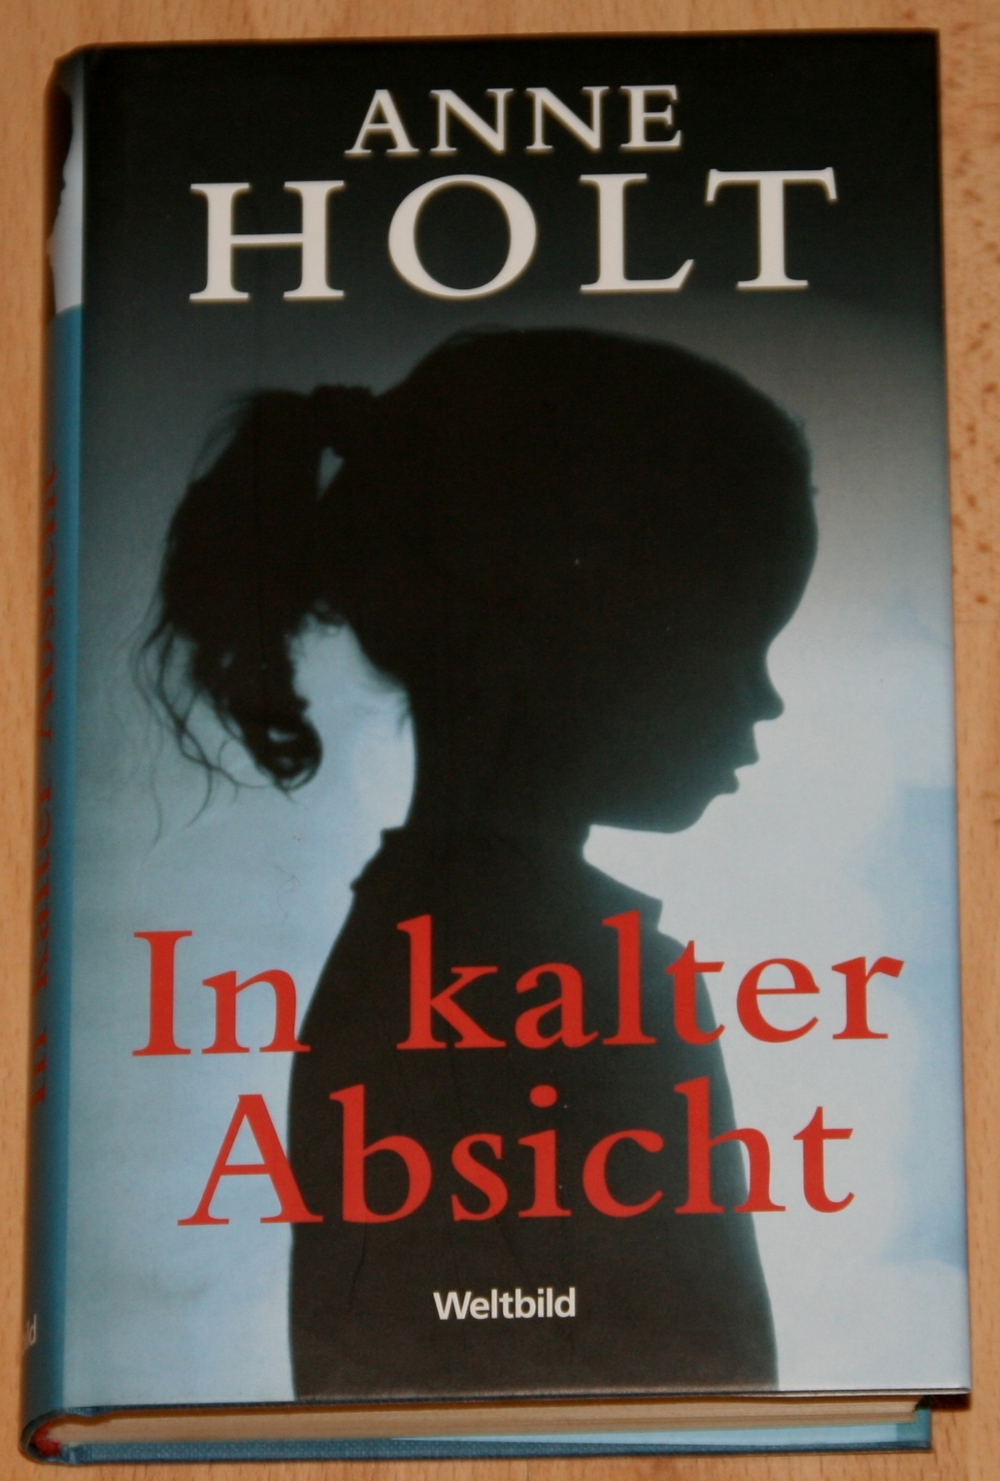 Gebund. Buch "In kalter Absicht" von Anne Holt - Krimi - Thriller